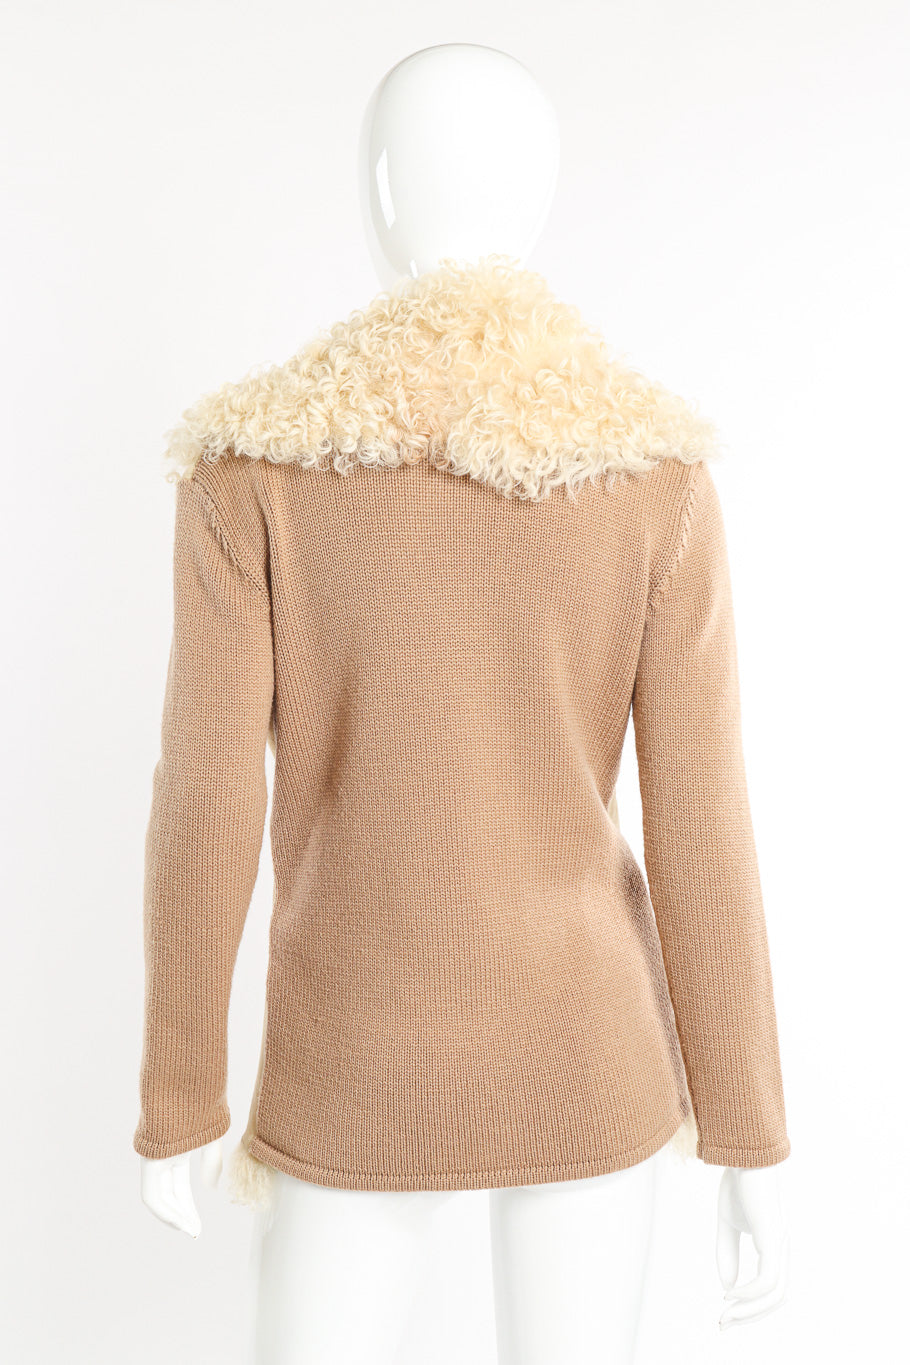 Lambsuede & Wool Knit Jacket by Oscar de la Renta on mannequin back @recessla